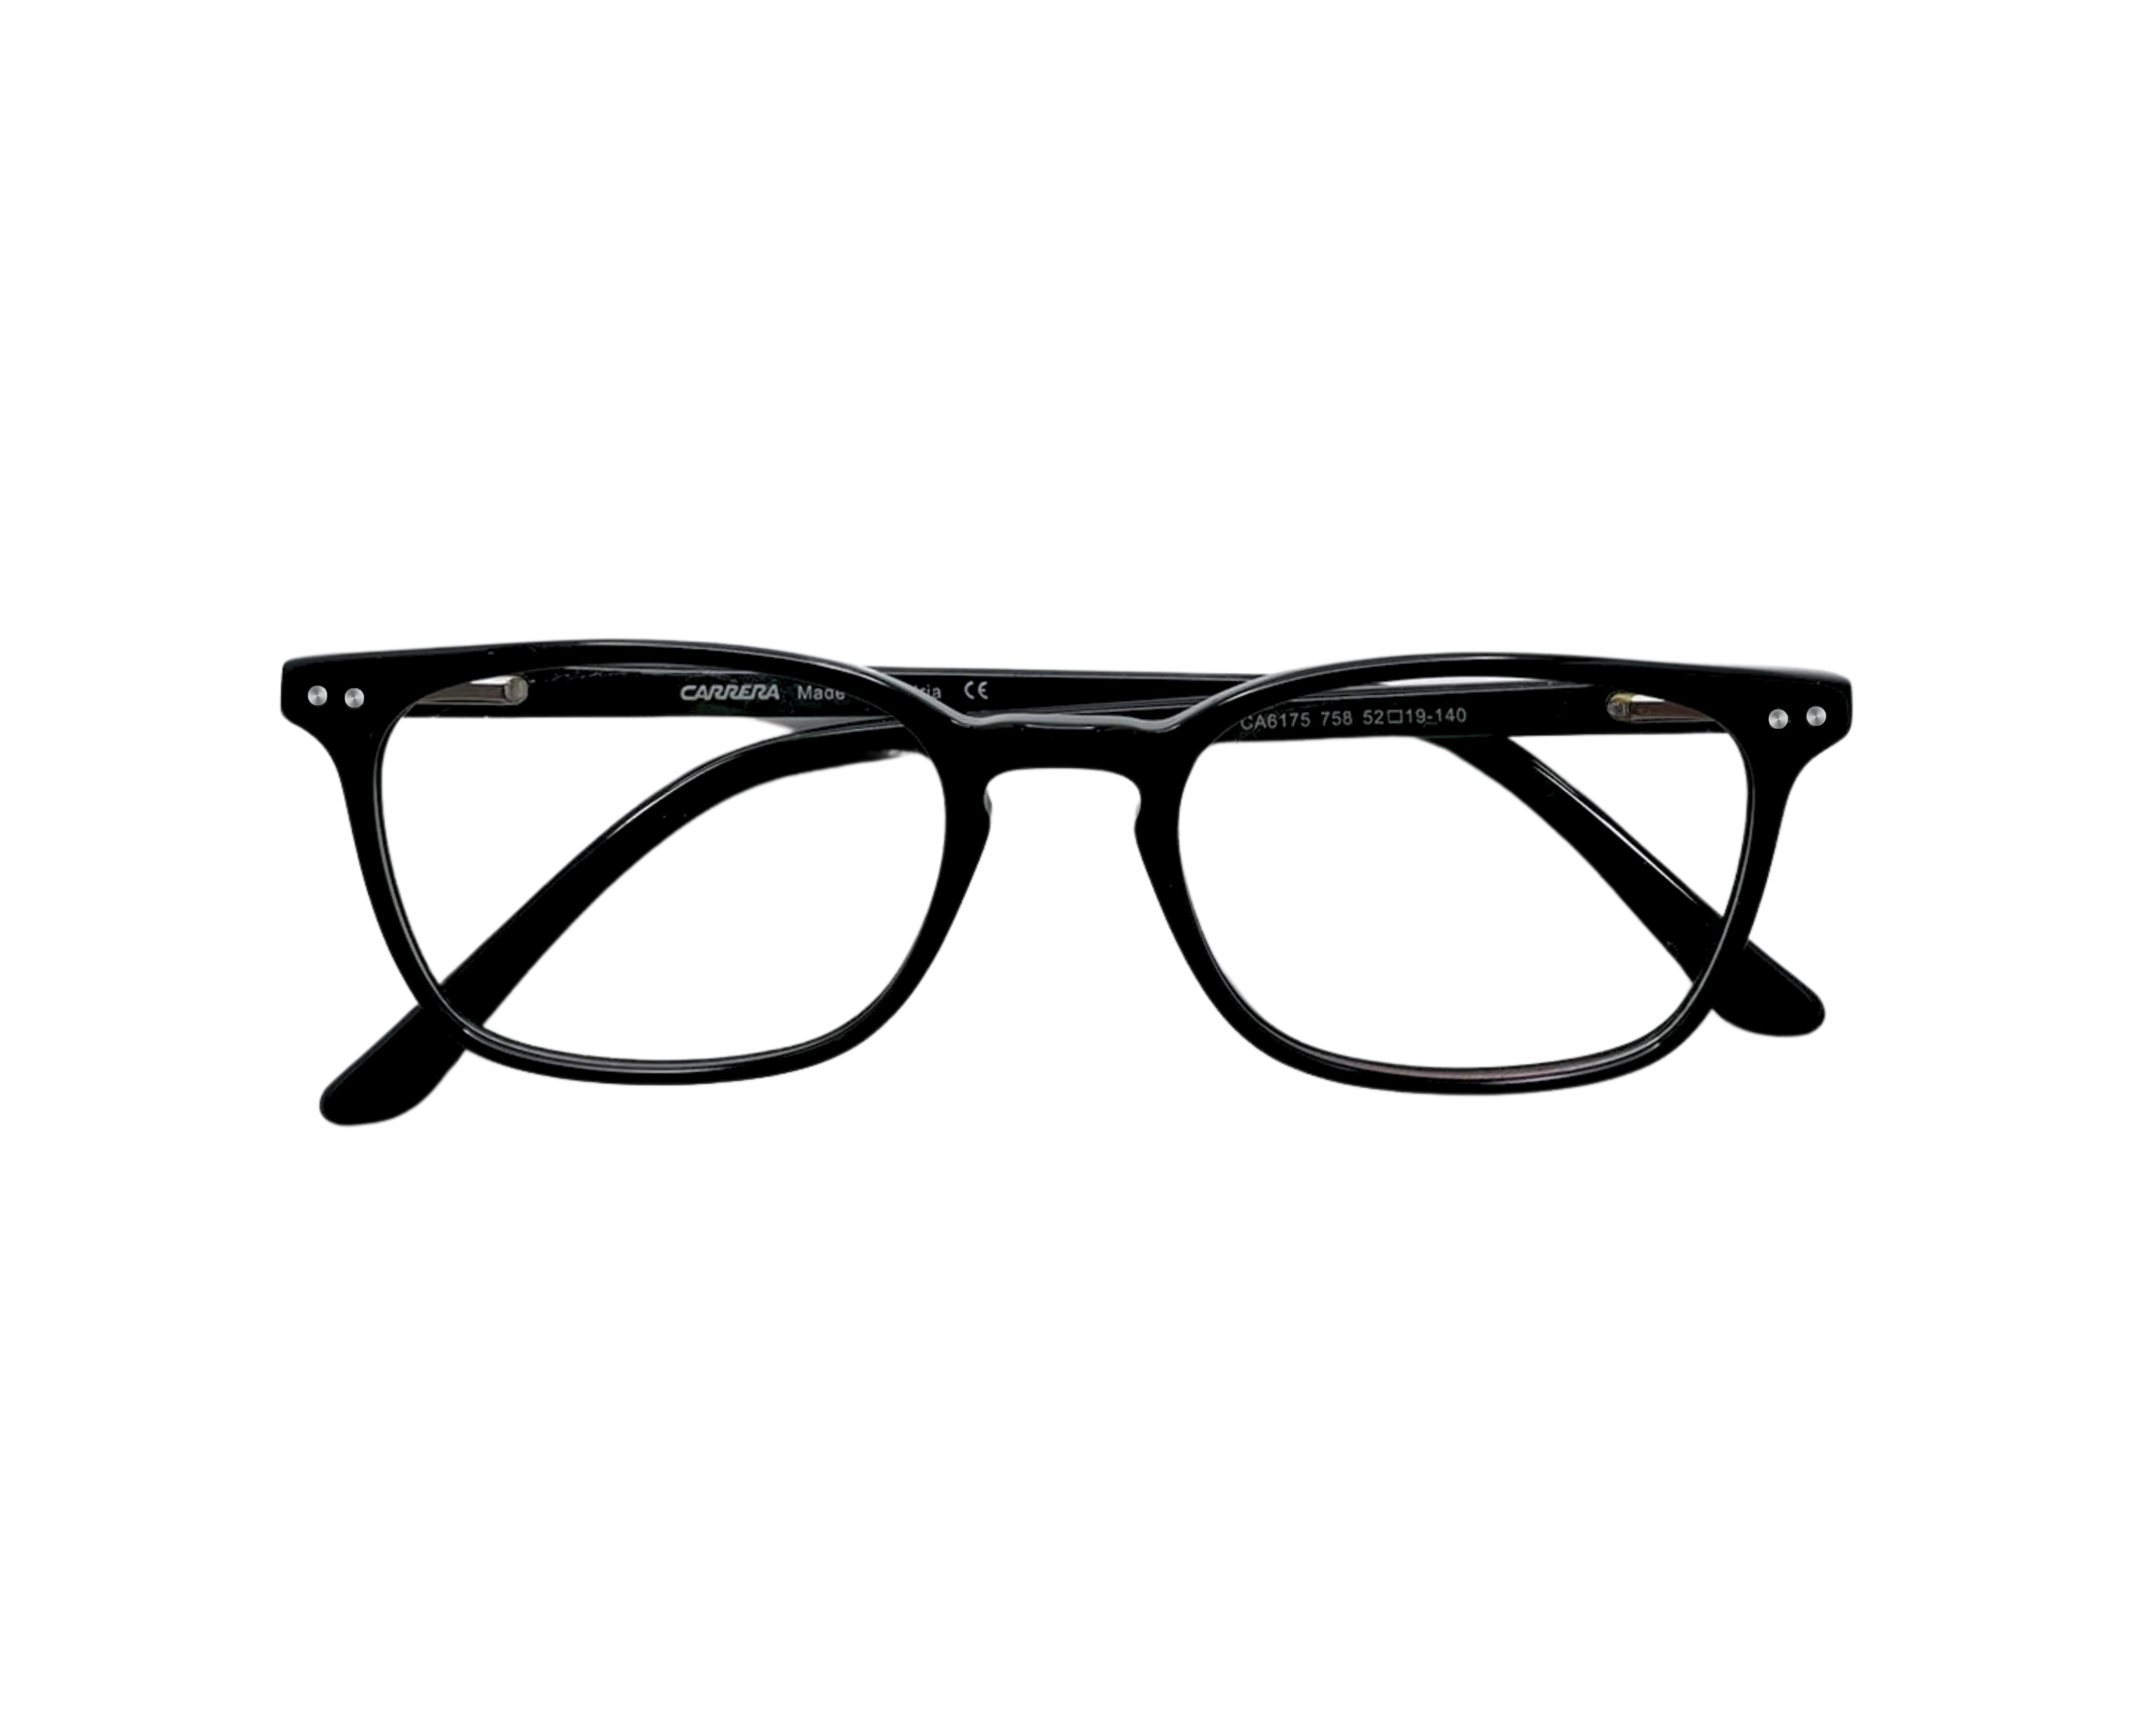 NS Classic - 6175 - Black - Eyeglasses